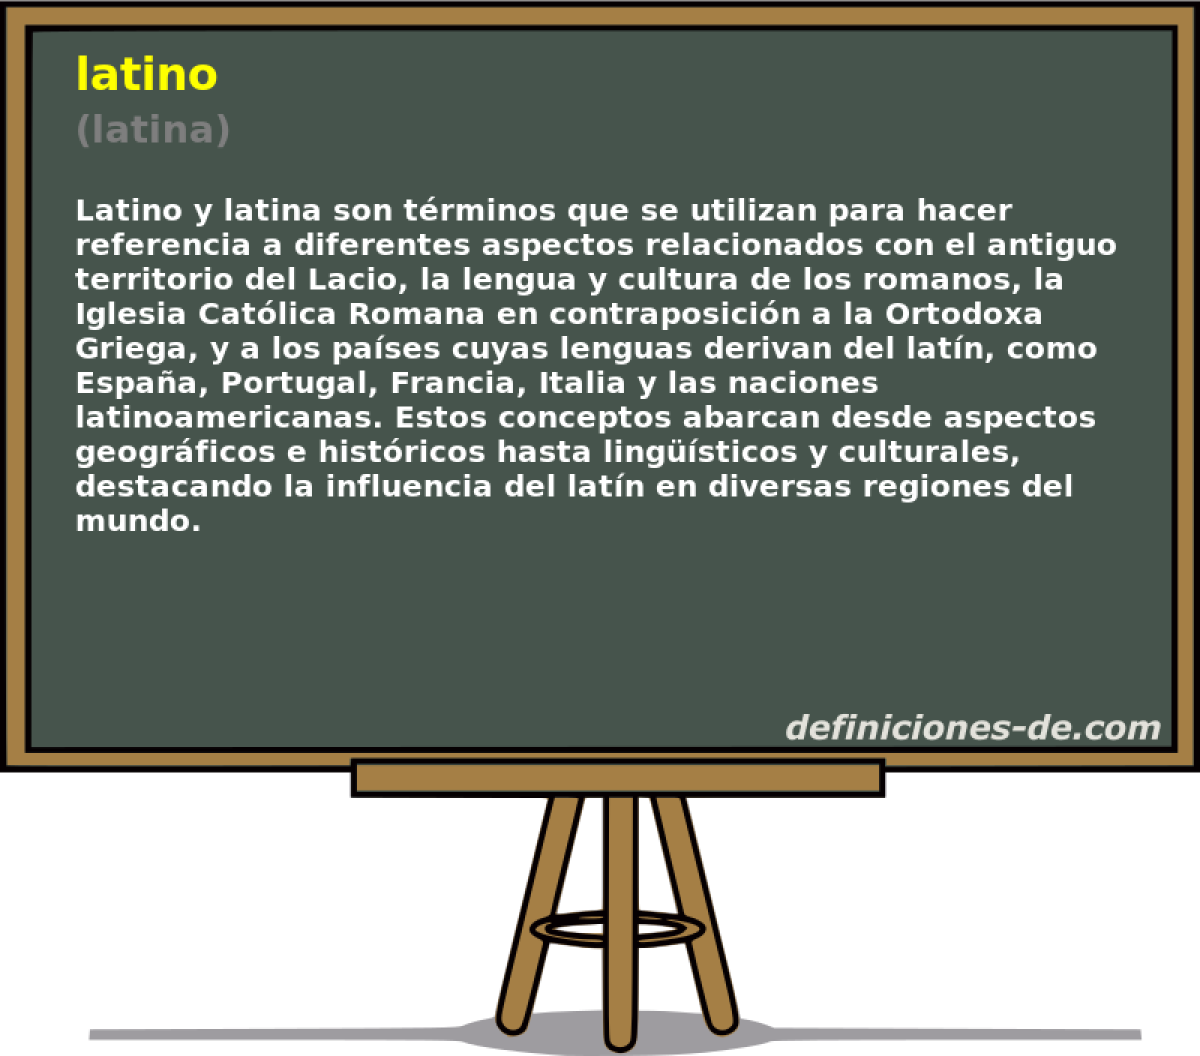 latino (latina)